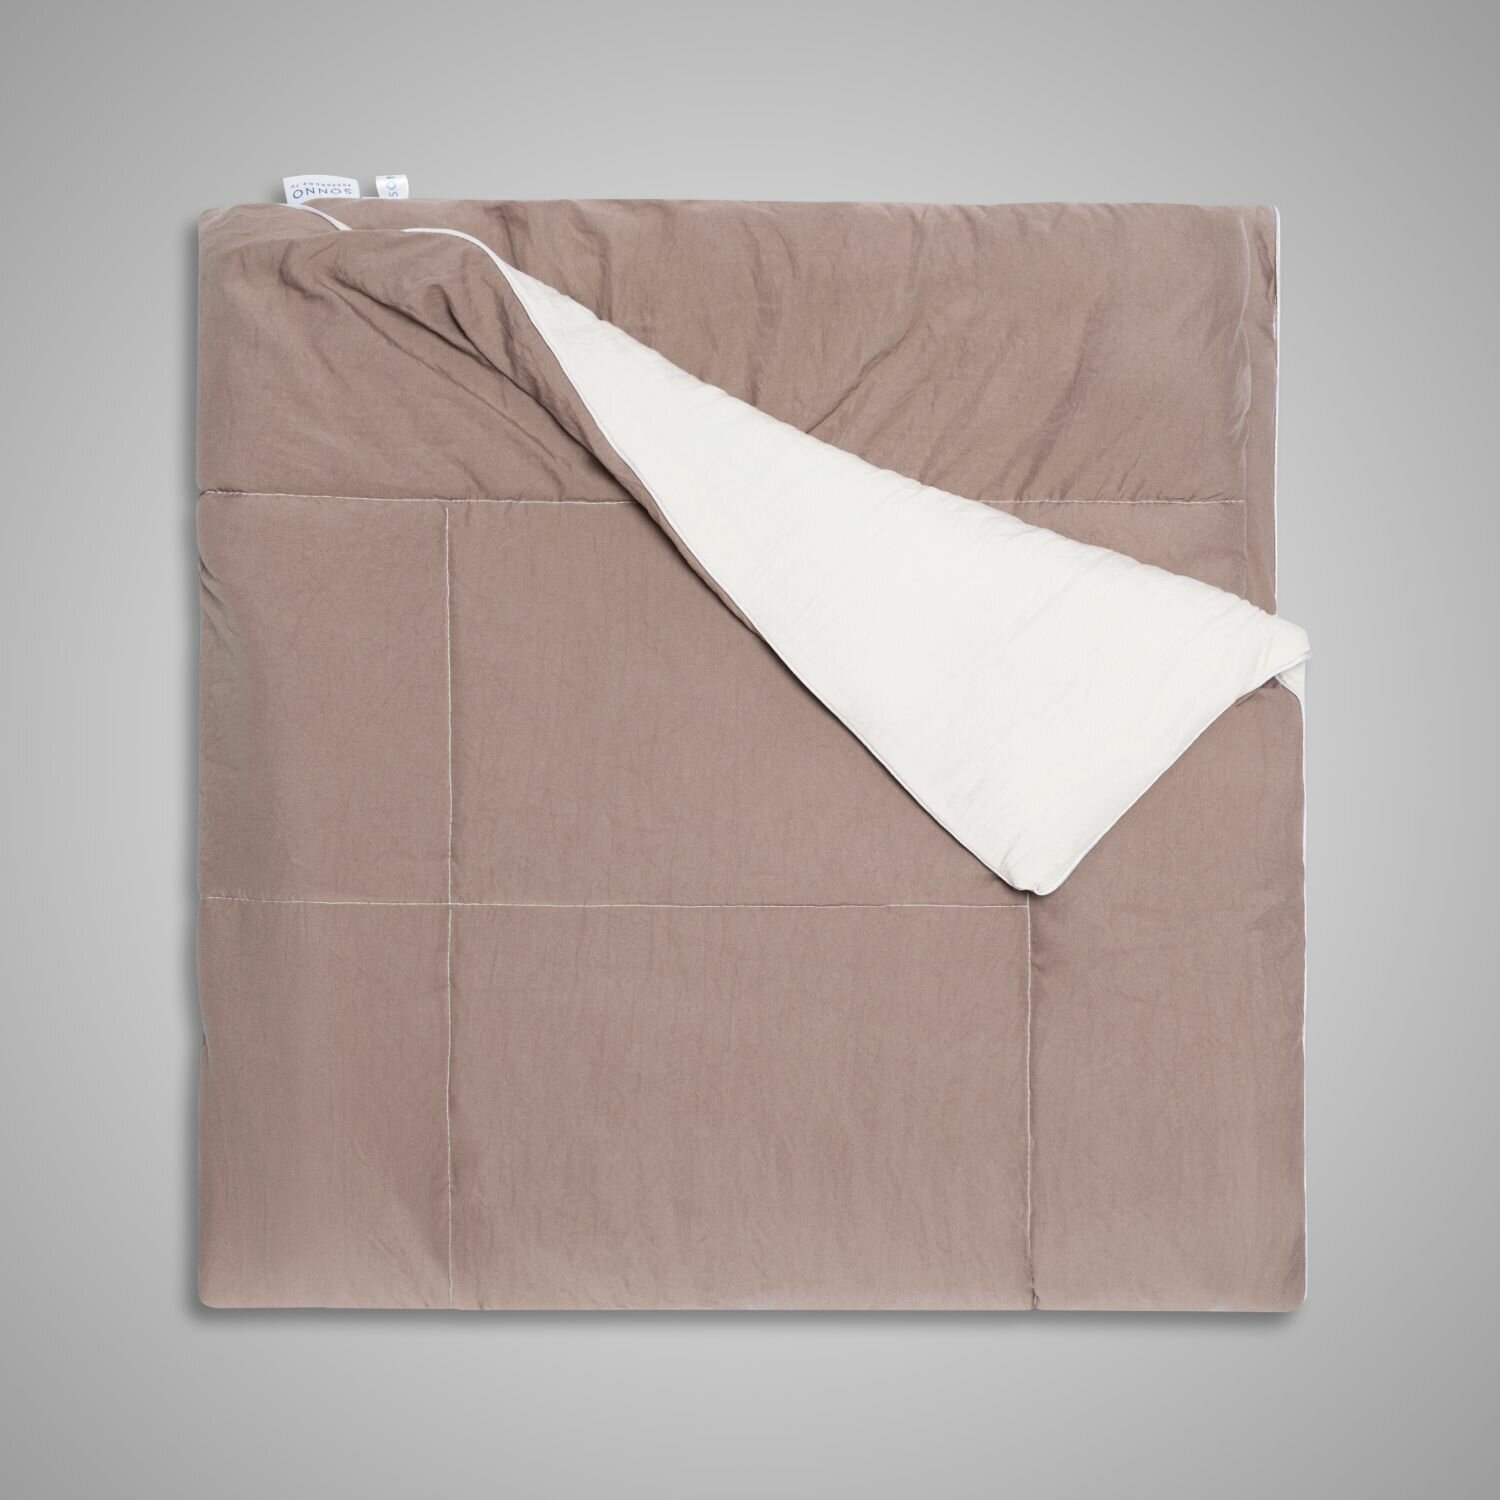 Гипоаллергенное одеяло SONNO TWIN евро размер, 200х220 см, цвет Бежевый/Мокко - фотография № 3